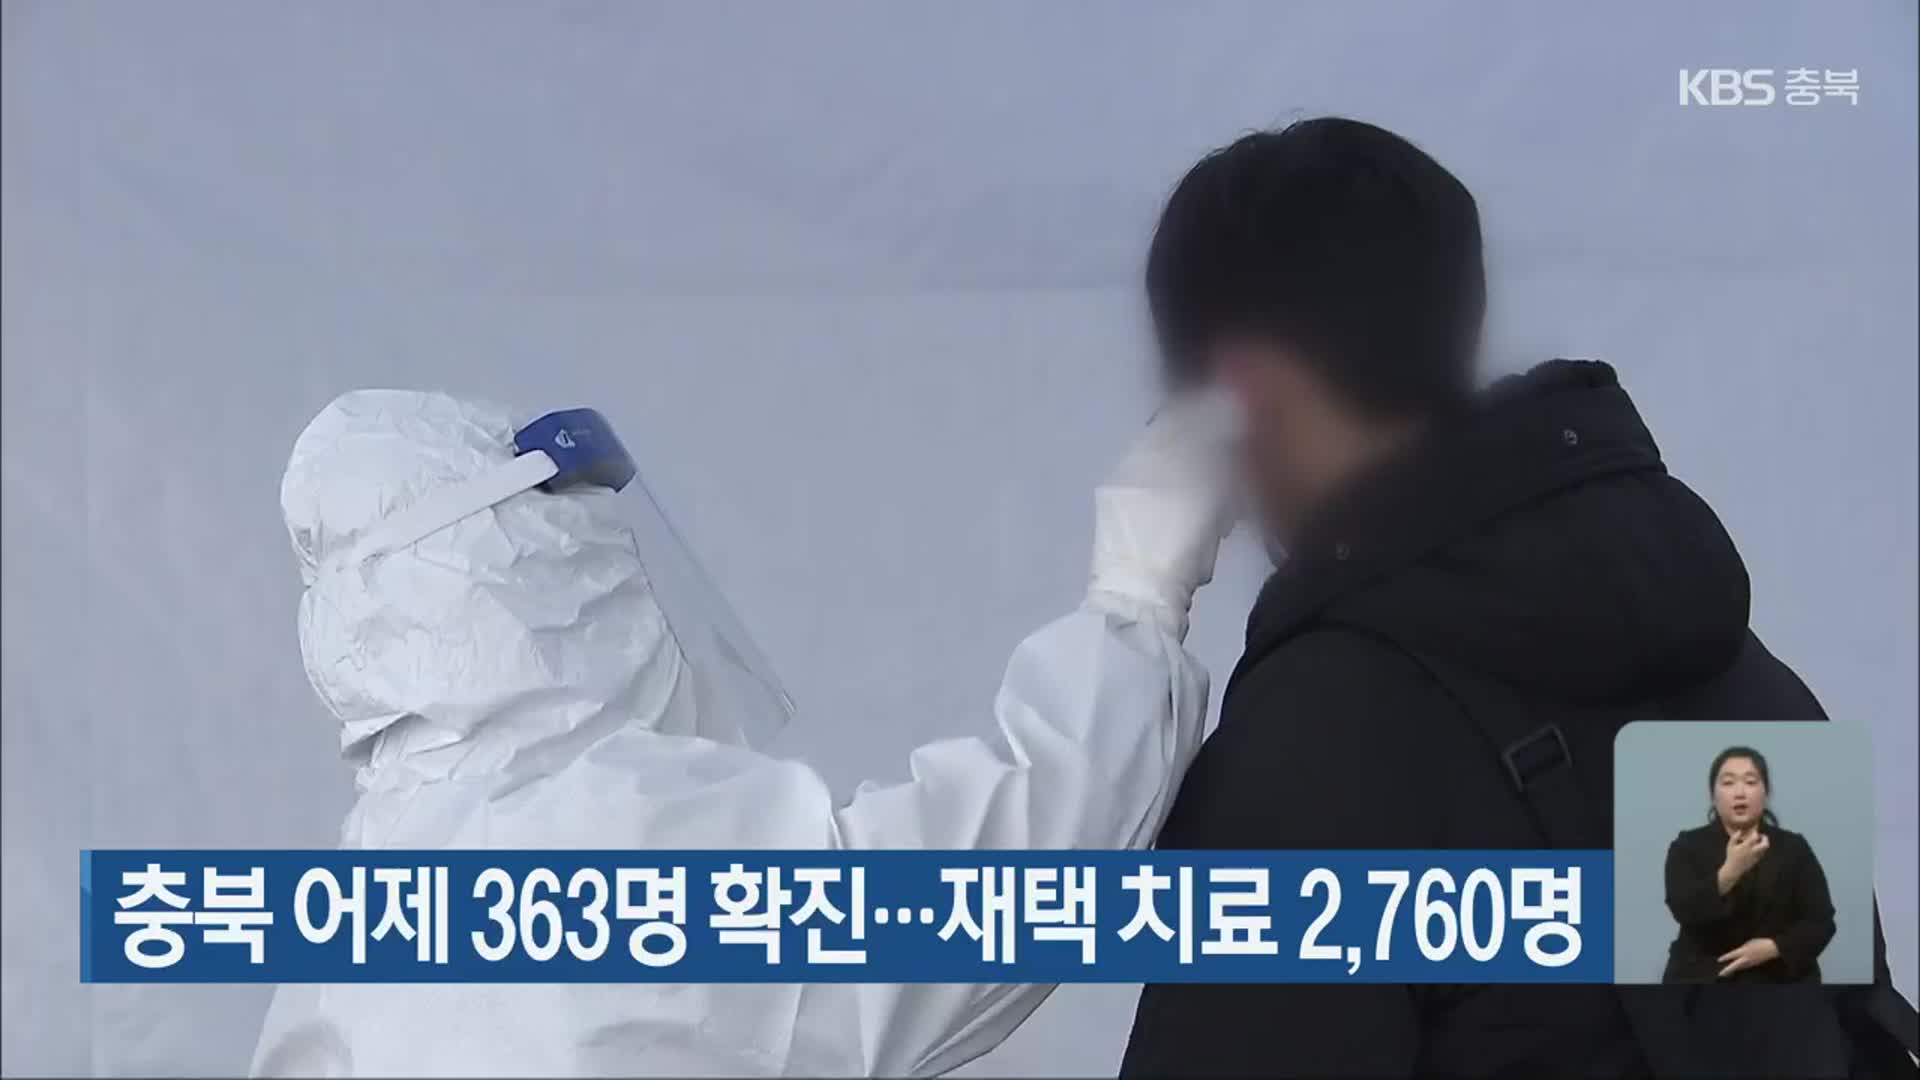 충북 어제 363명 확진…재택 치료 2,760명